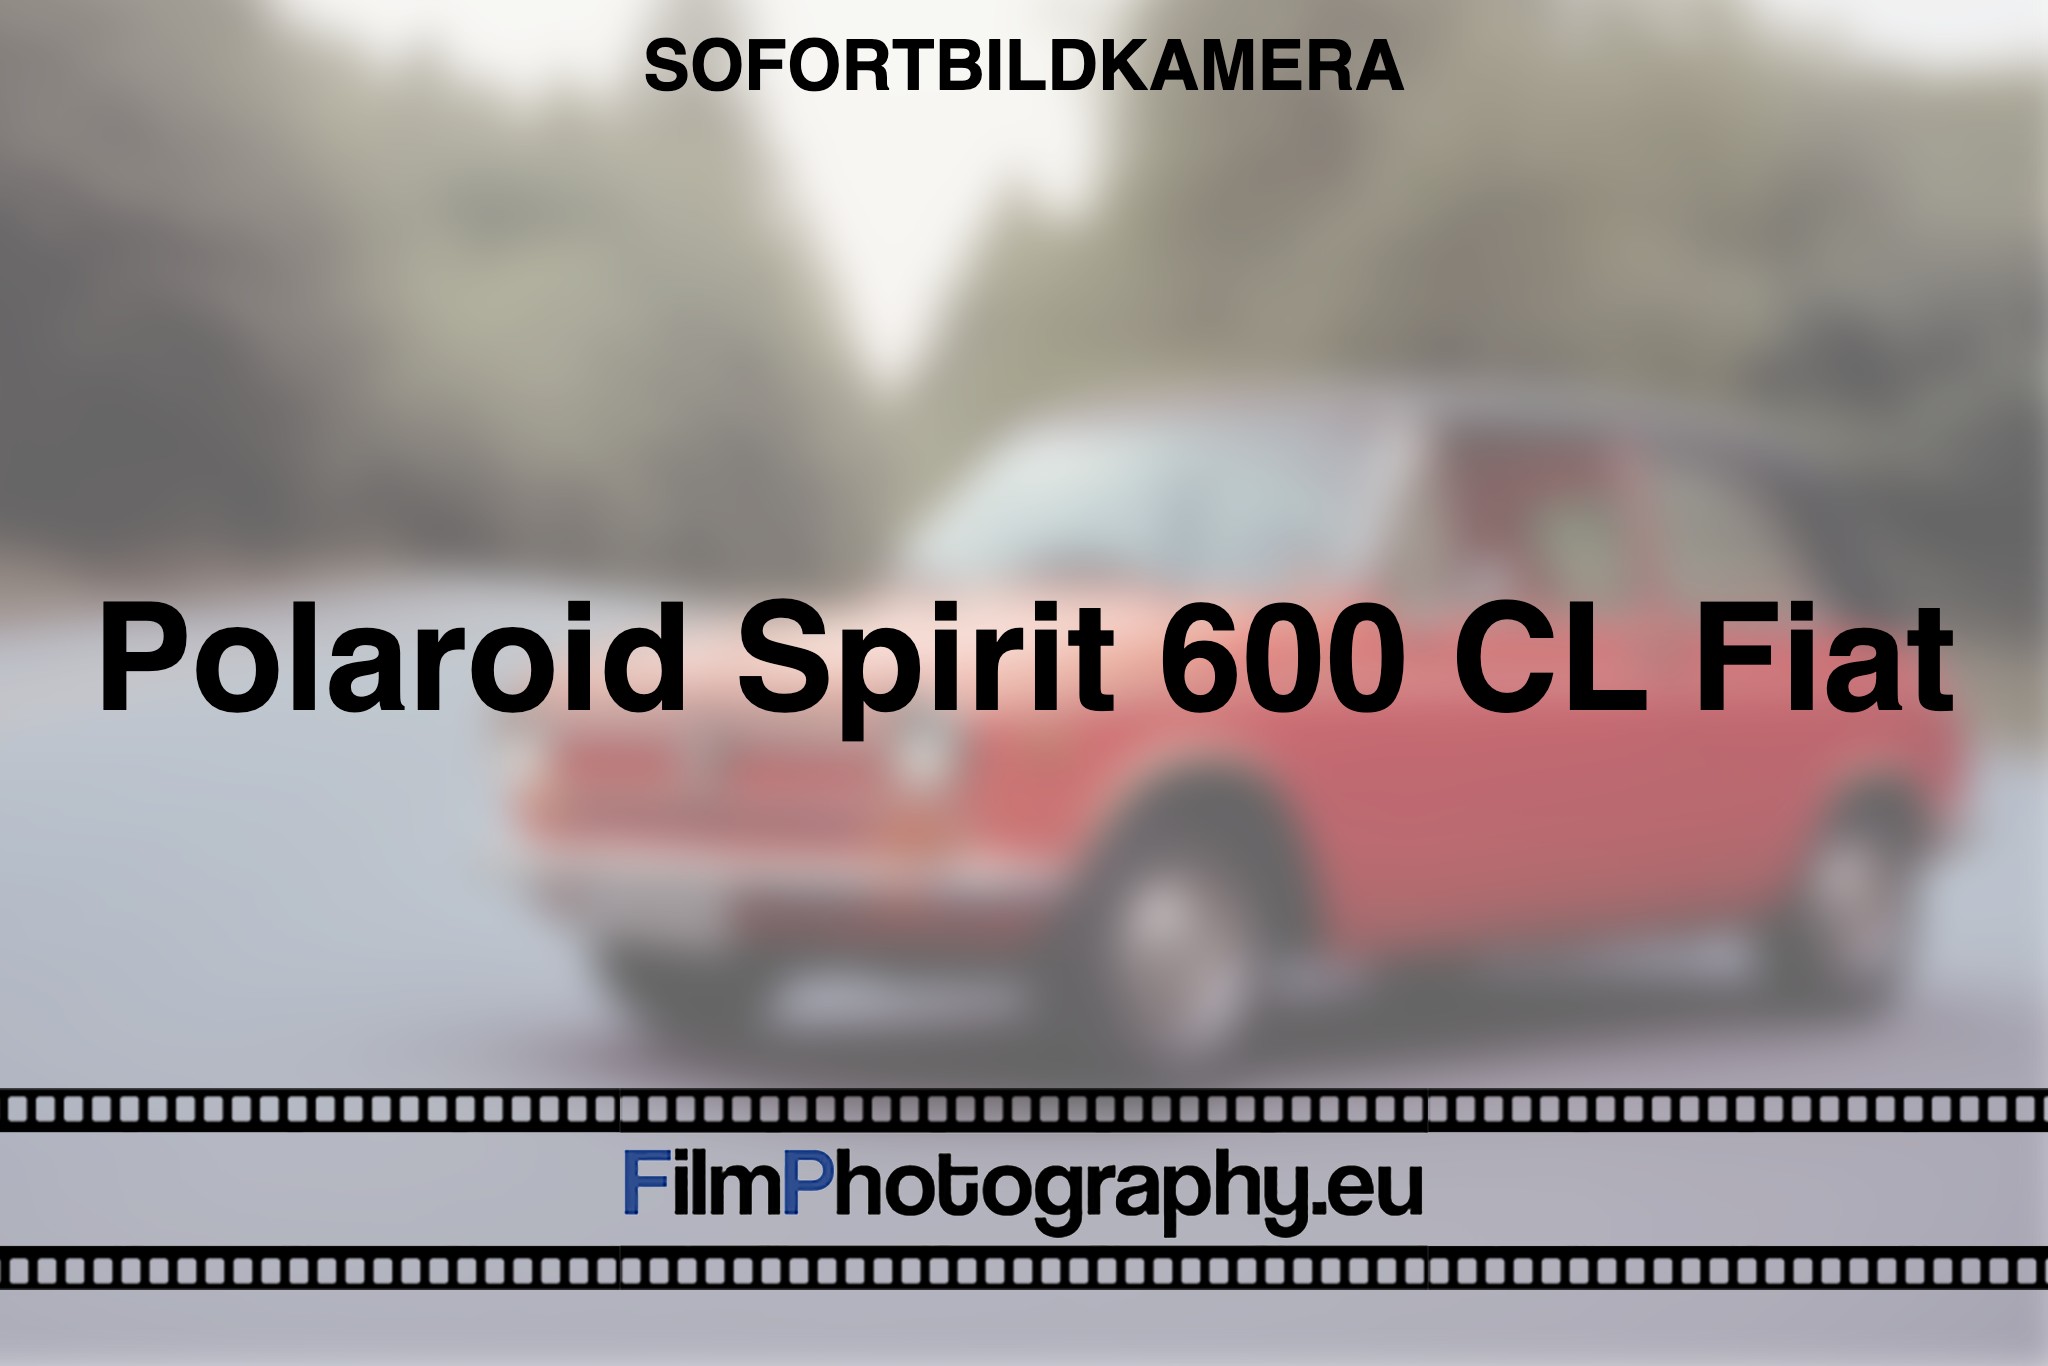 polaroid-spirit-600-cl-fiat-sofortbildkamera-fp-bnv